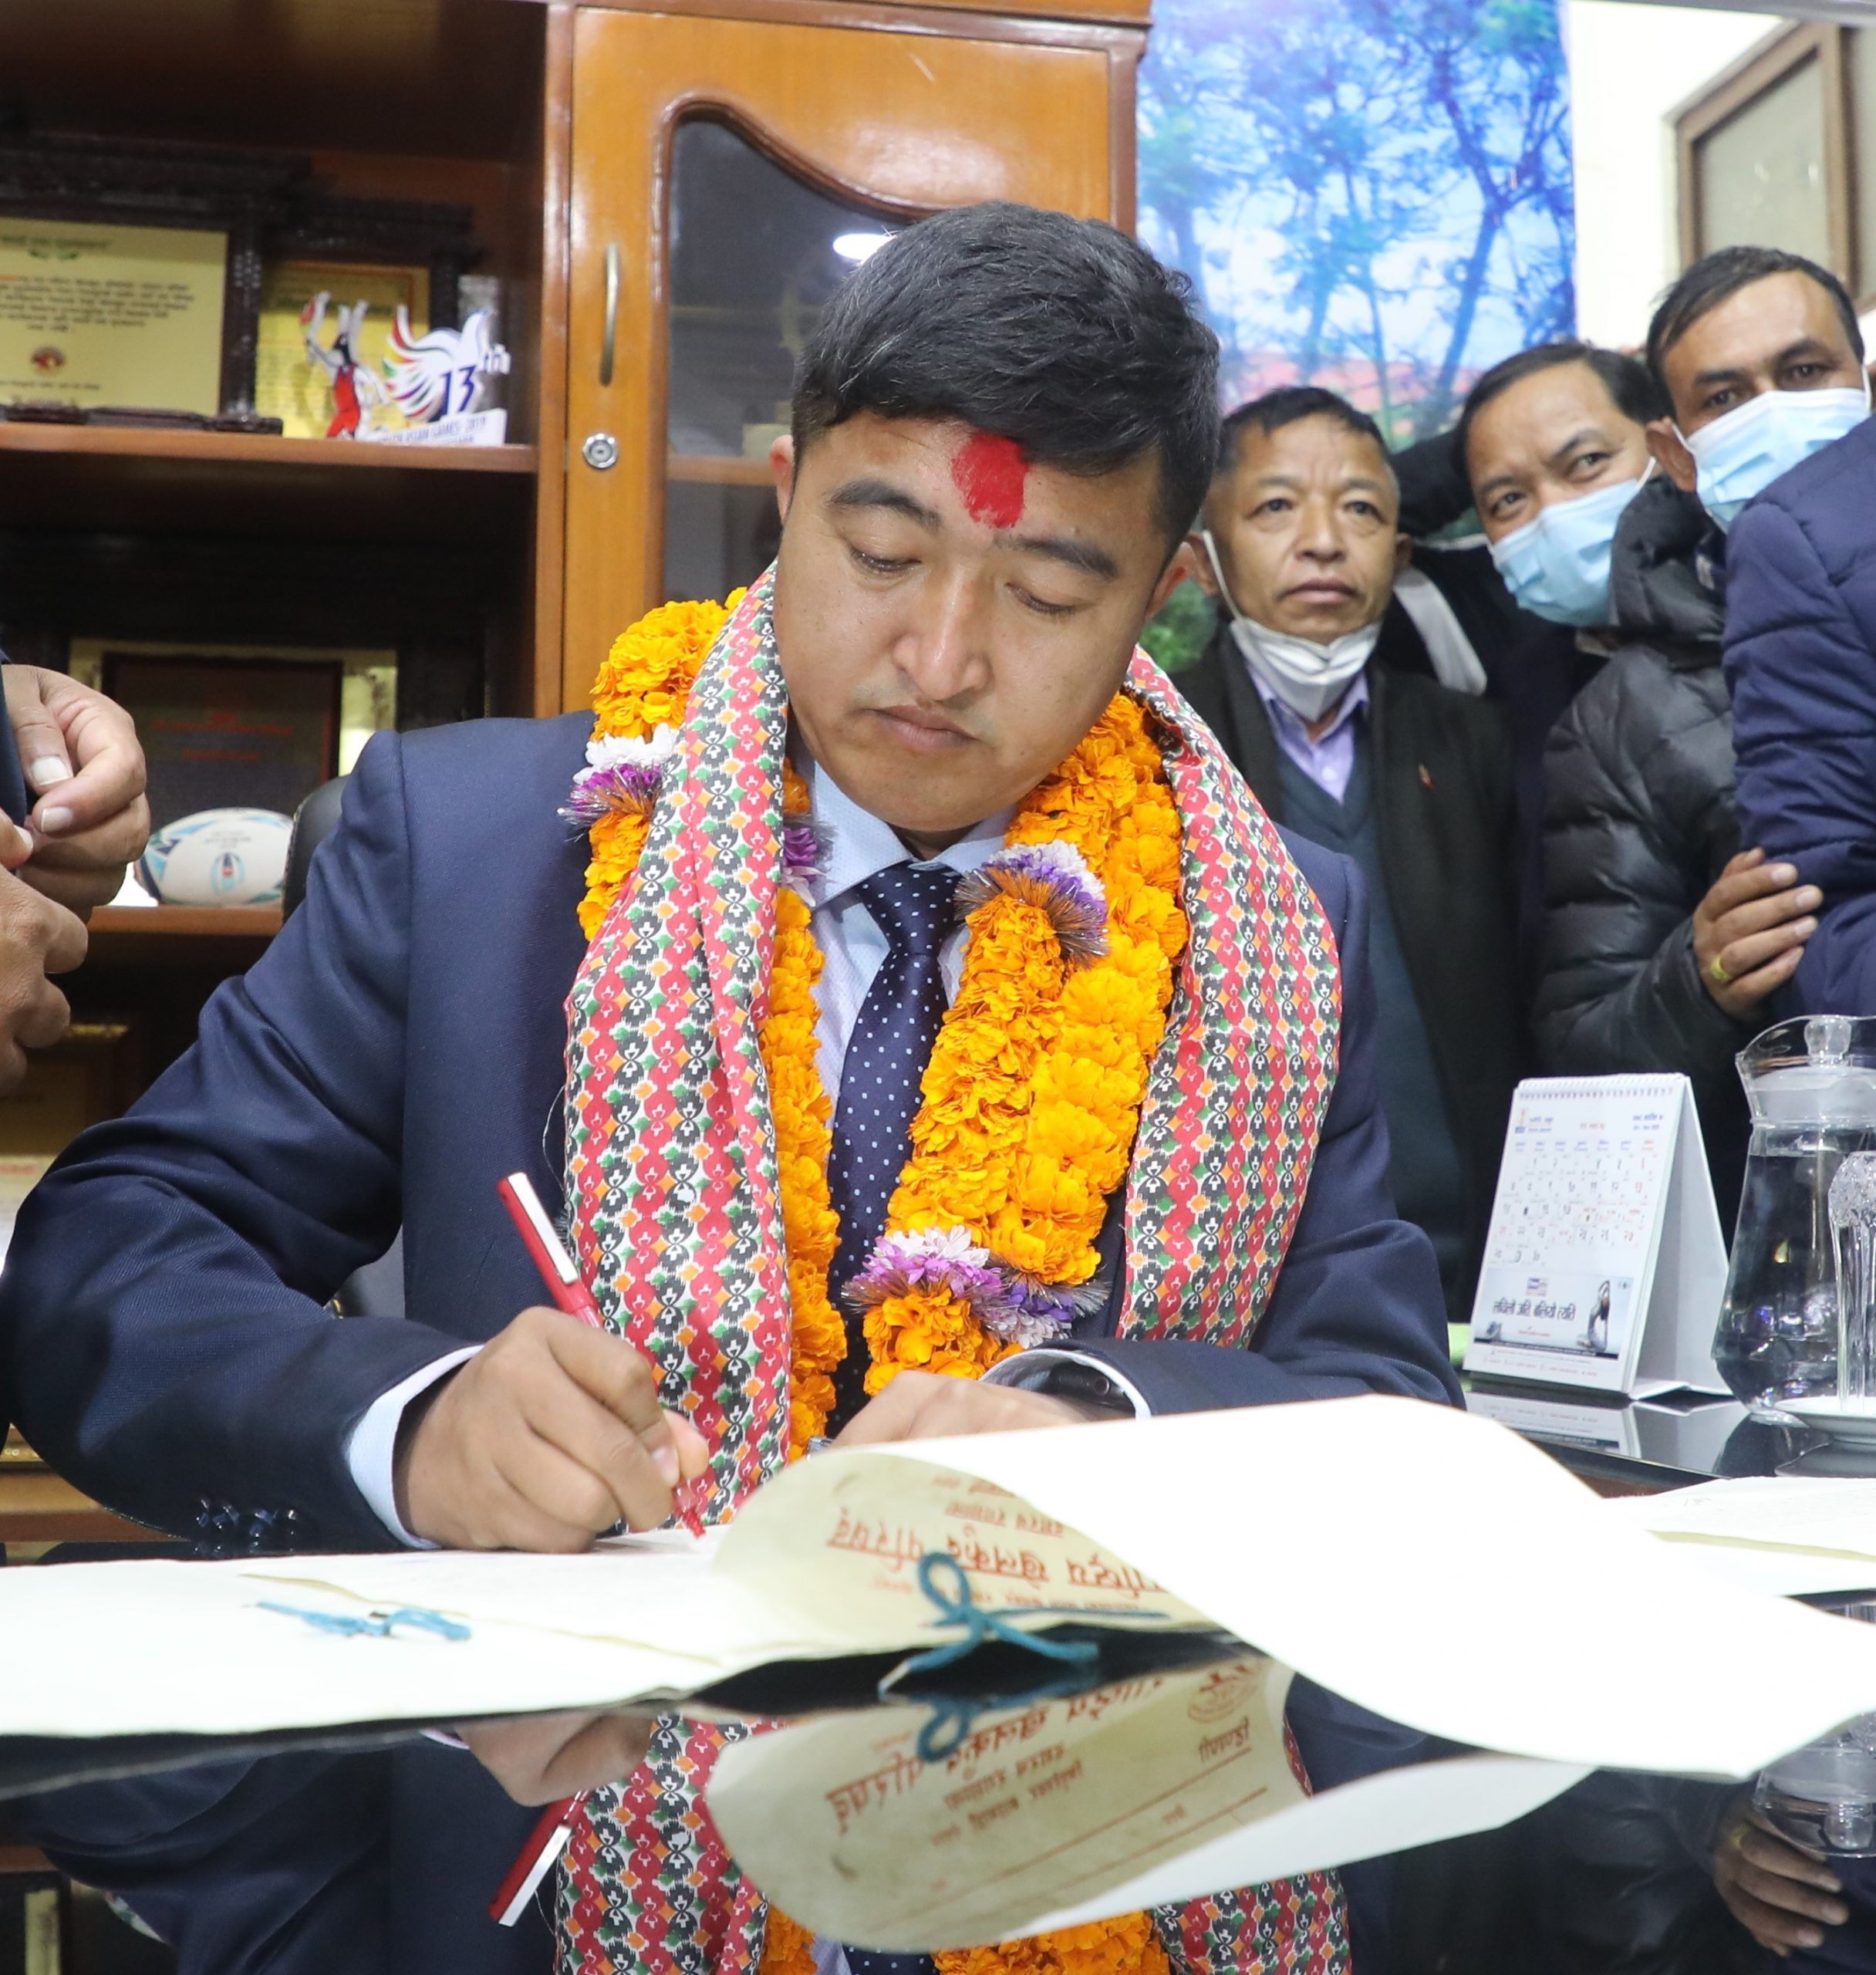 नेपाली खेलकुदमा विमाको नीतिगत ब्यवस्था लागू